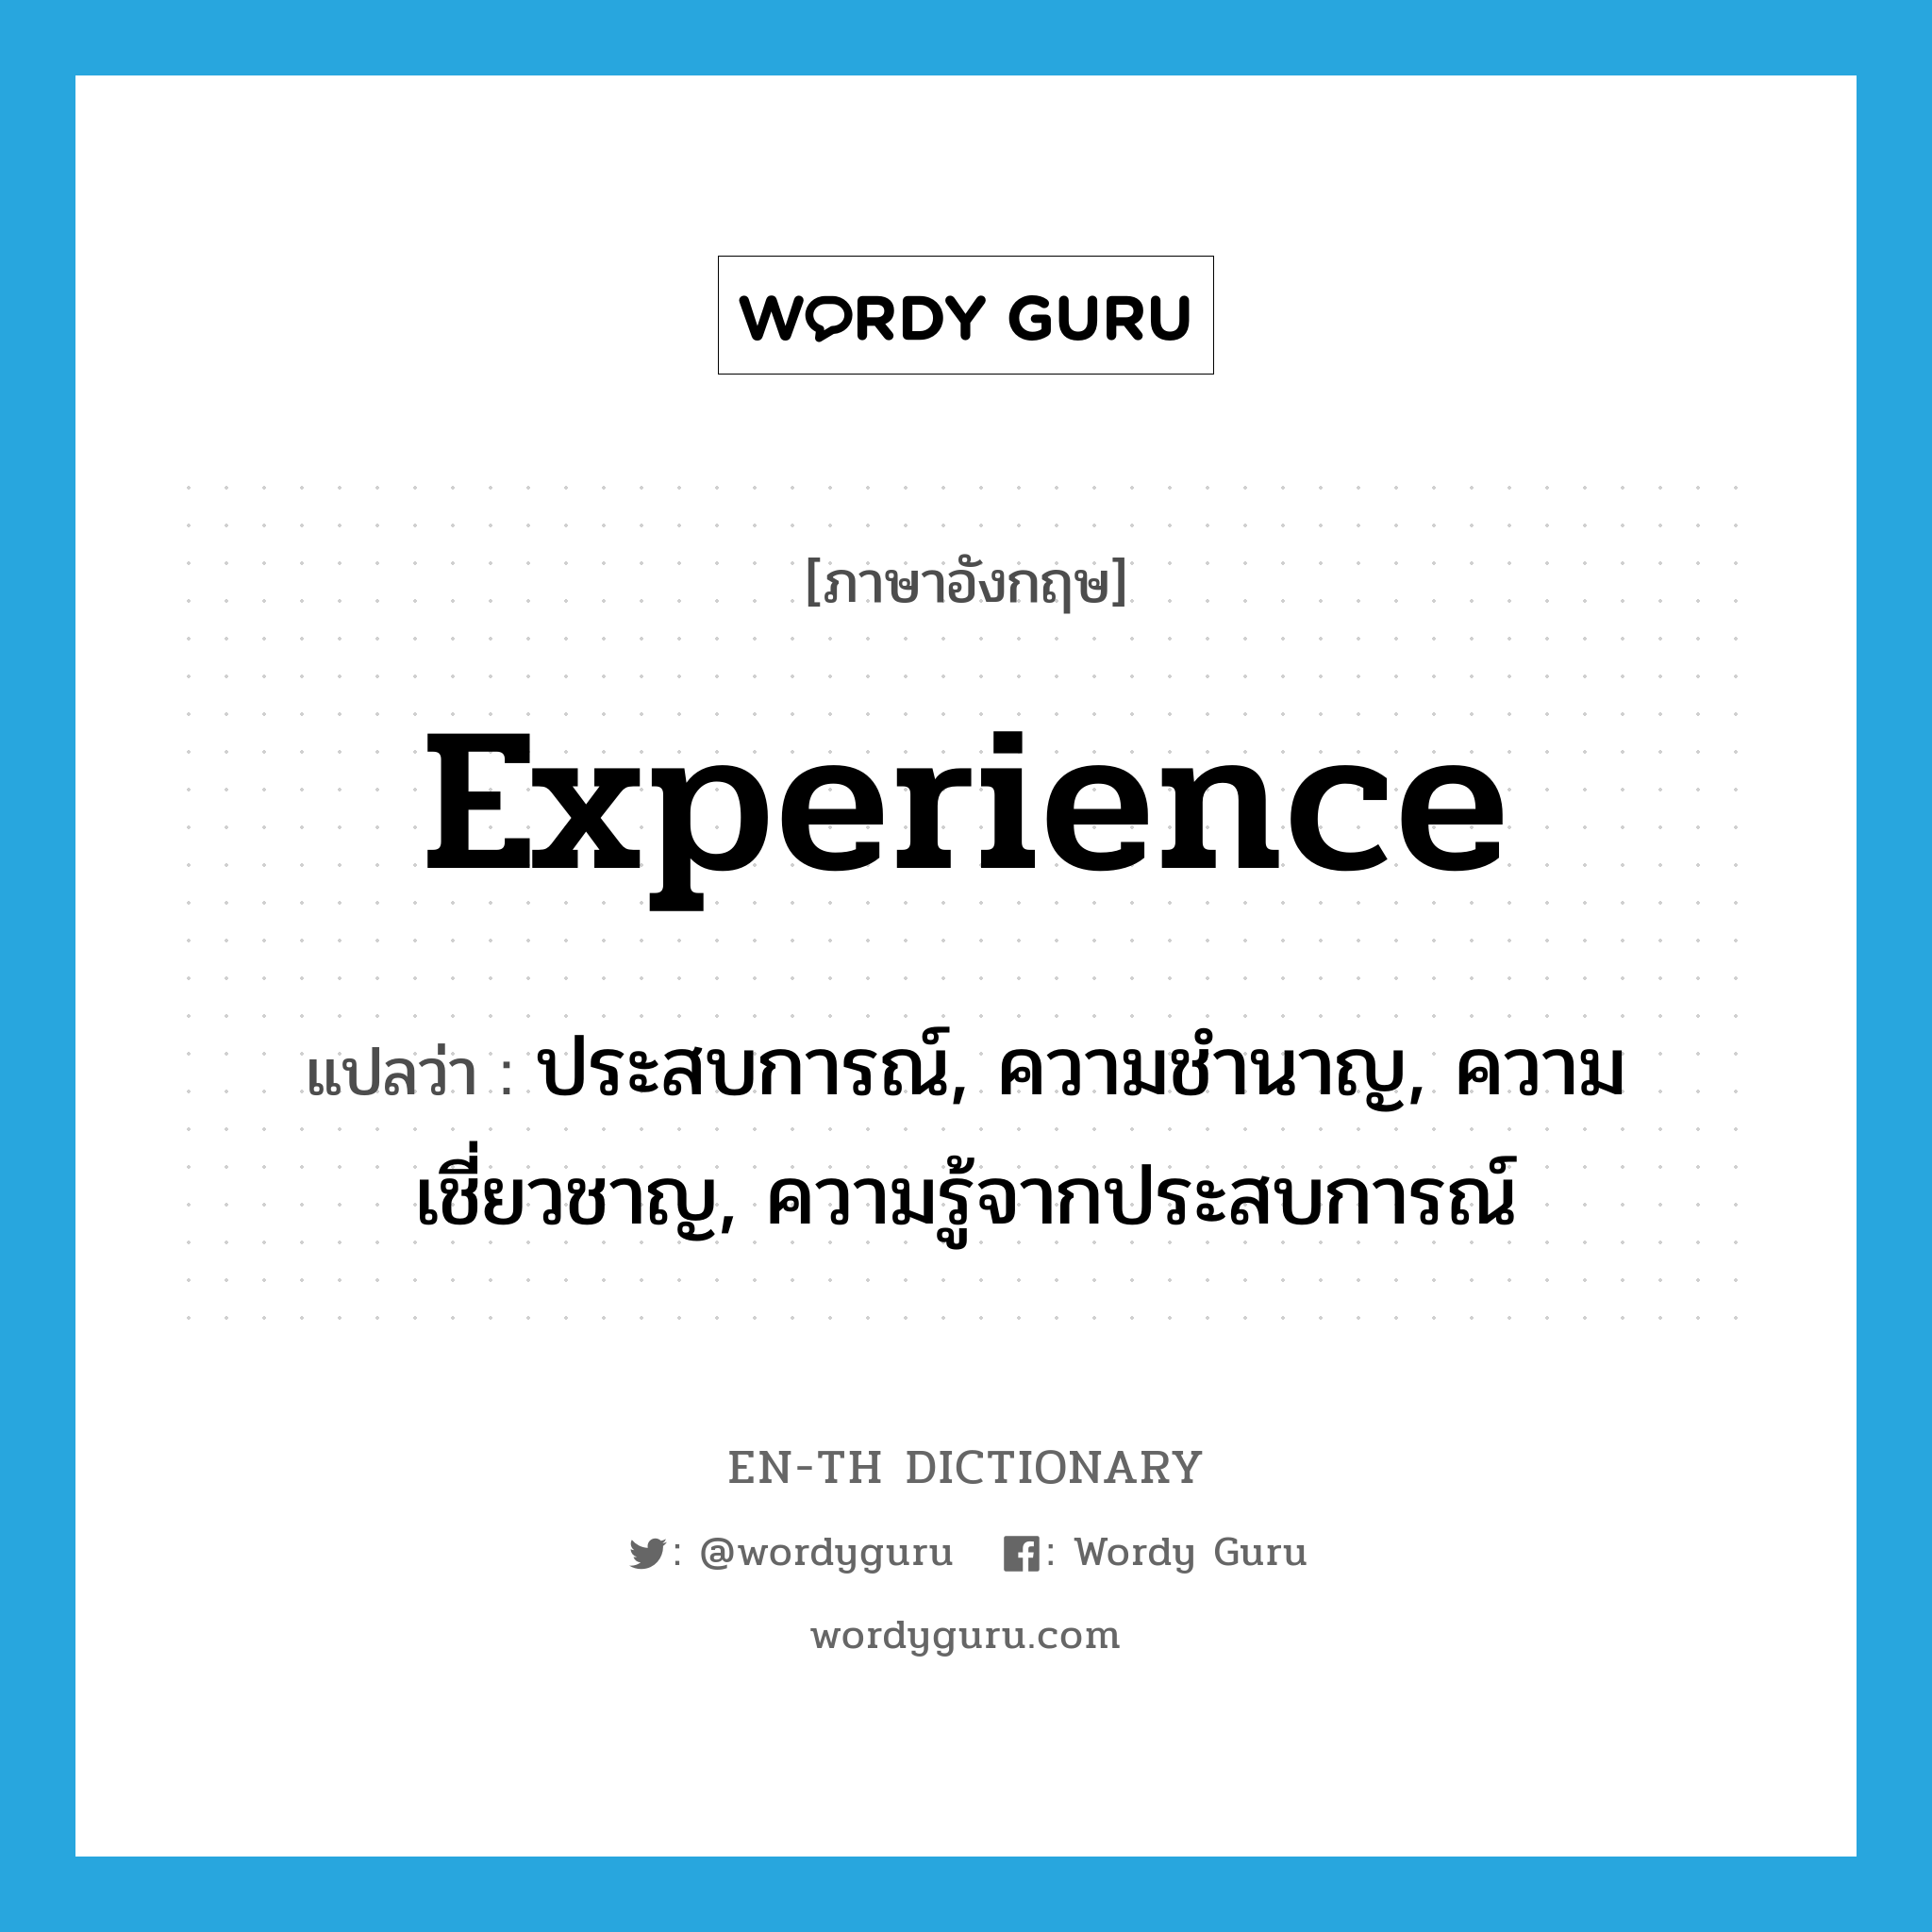 ประสบการณ์, ความชำนาญ, ความเชี่ยวชาญ, ความรู้จากประสบการณ์ ภาษาอังกฤษ?, คำศัพท์ภาษาอังกฤษ ประสบการณ์, ความชำนาญ, ความเชี่ยวชาญ, ความรู้จากประสบการณ์ แปลว่า experience ประเภท N หมวด N